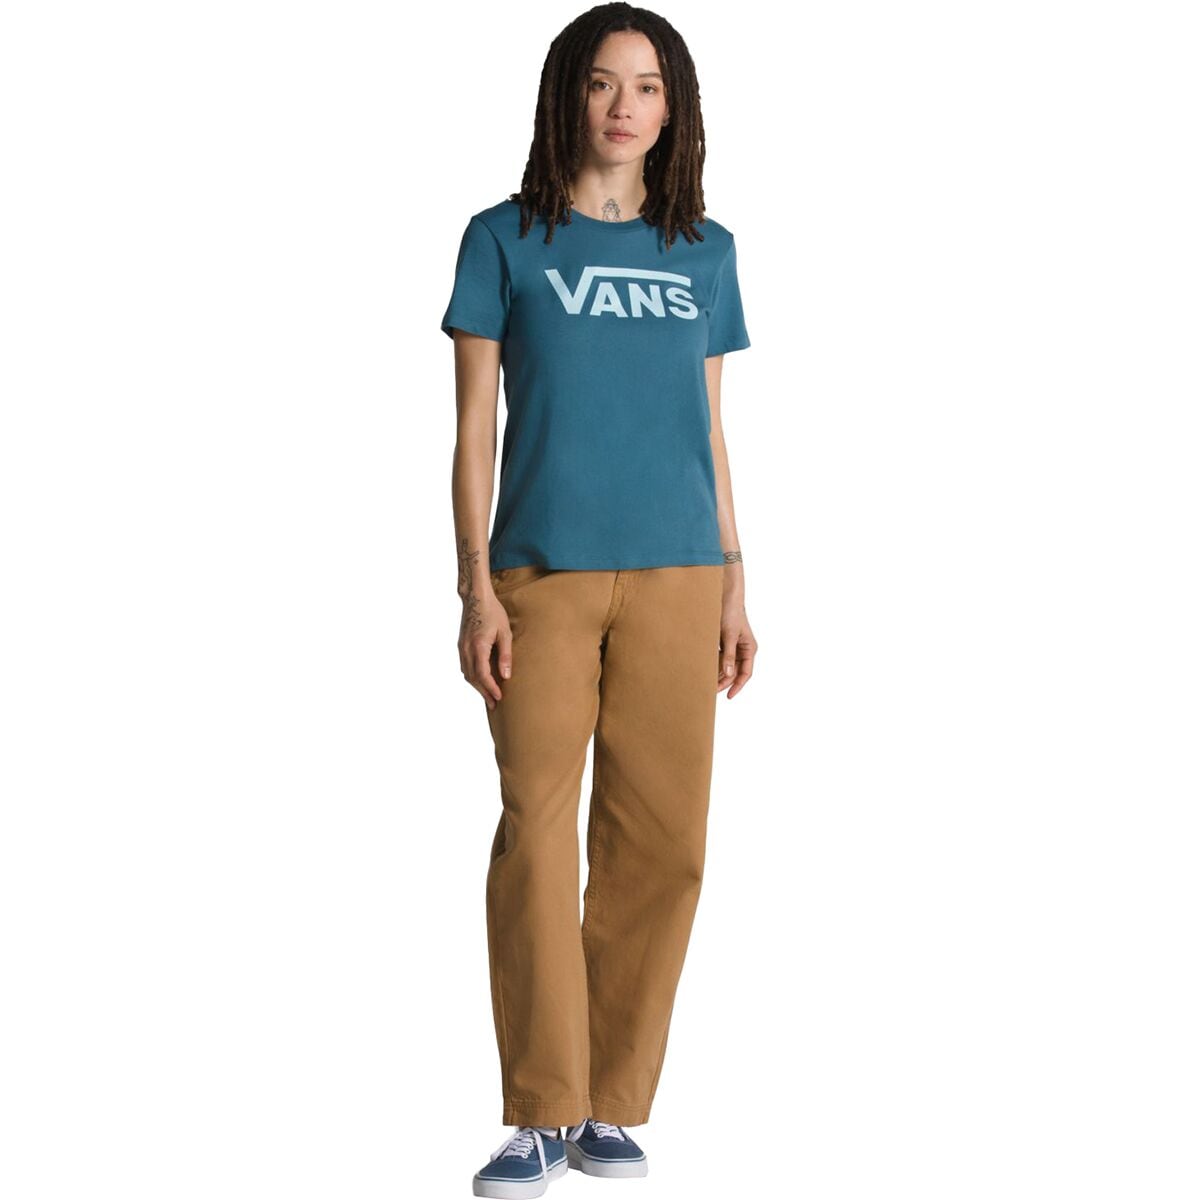 Vans Flying V Crew T-Shirt - Women's - Clothing